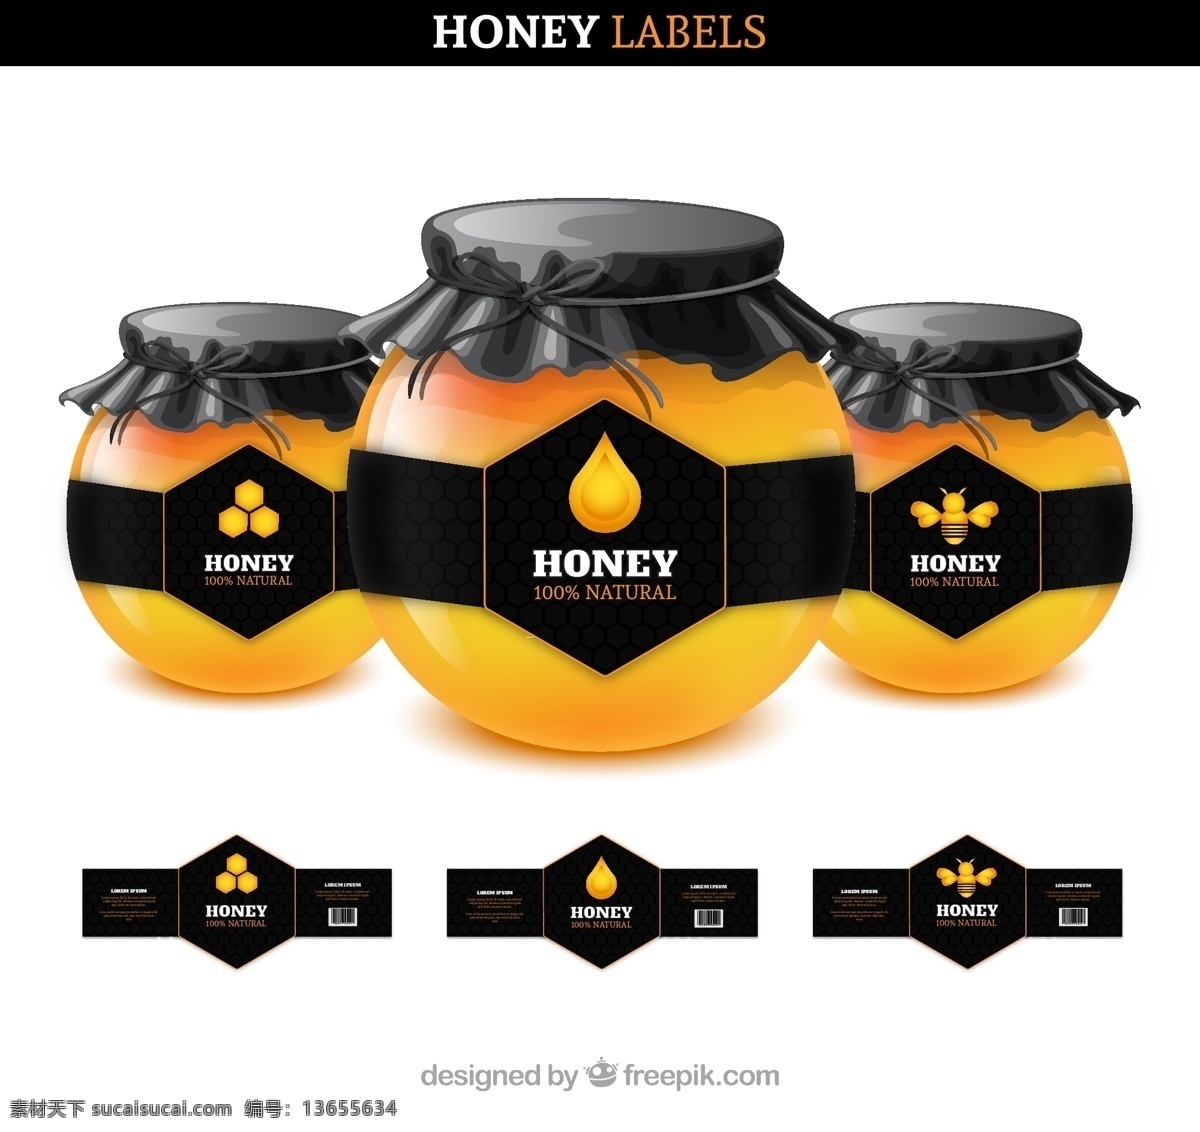 蜂蜜 蜂蜜标签 蜂蜜包装 蜂蜜盒子 蜂蜜礼盒 蜂蜜瓶 蜂皇浆 椴树蜂蜜 长白山蜂蜜 段数蜂蜜包装 蜂蜜包装设计 食品包装设计 包装设计 甜言蜜语 甜言蜜语设计 蜂巢 蜜蜂 精装蜂蜜礼盒